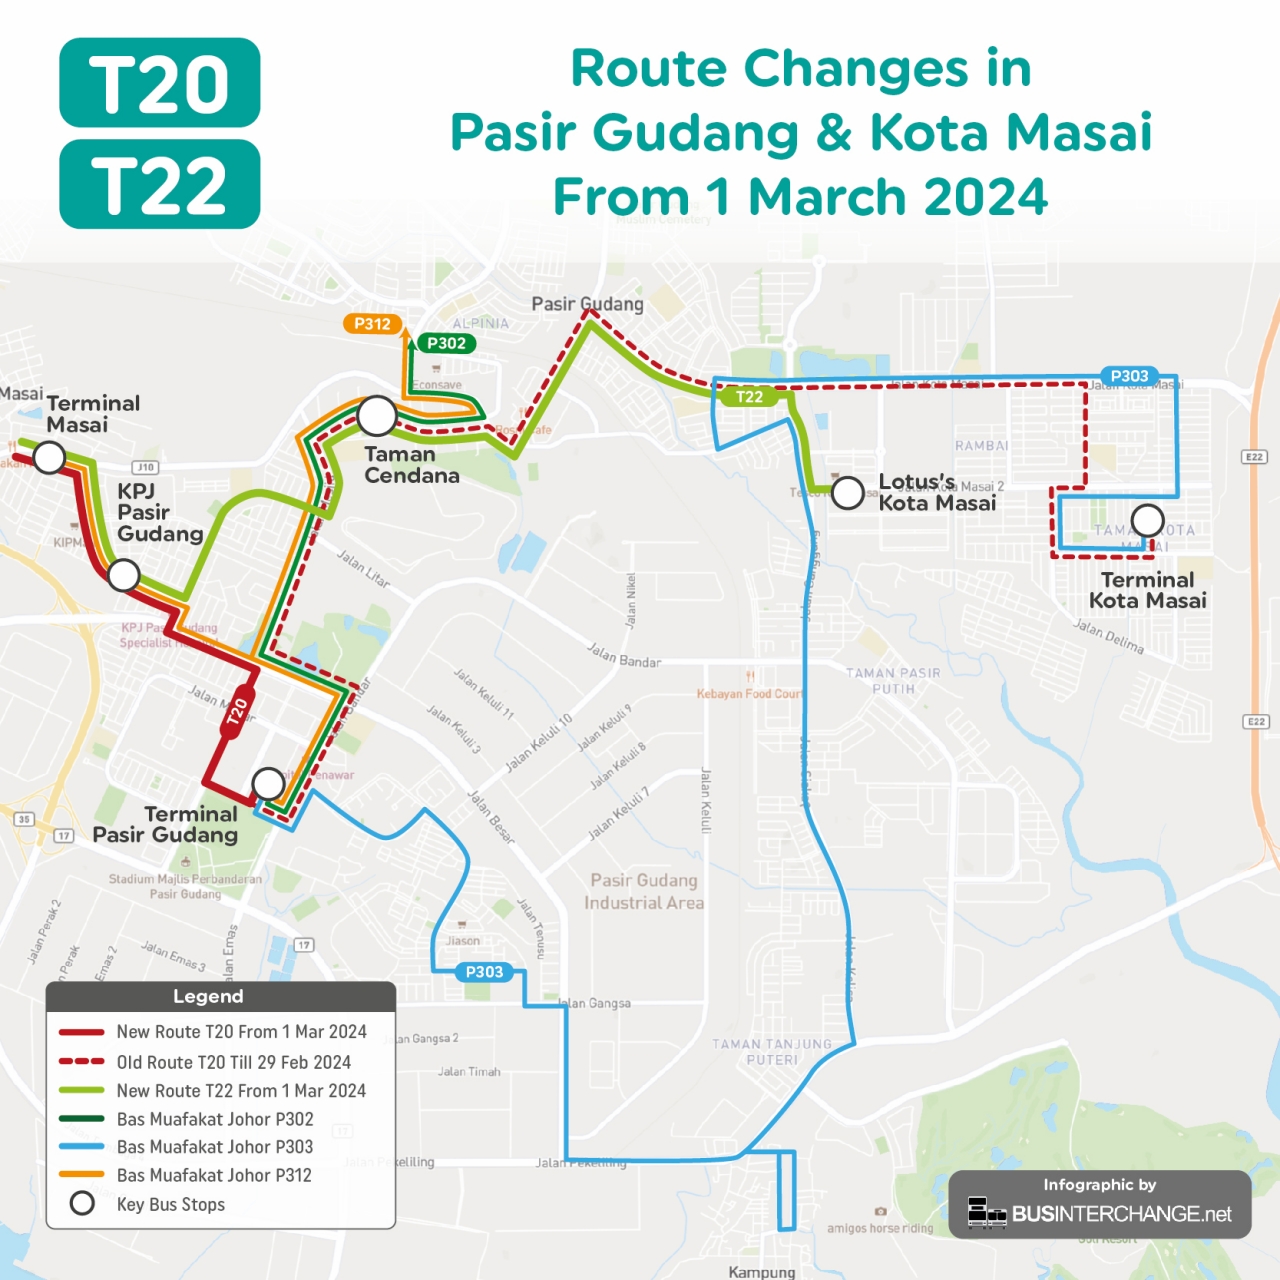 myBas Johor Bahru Route T20 shorten to end at Pasir Gudang from 1 March 2024